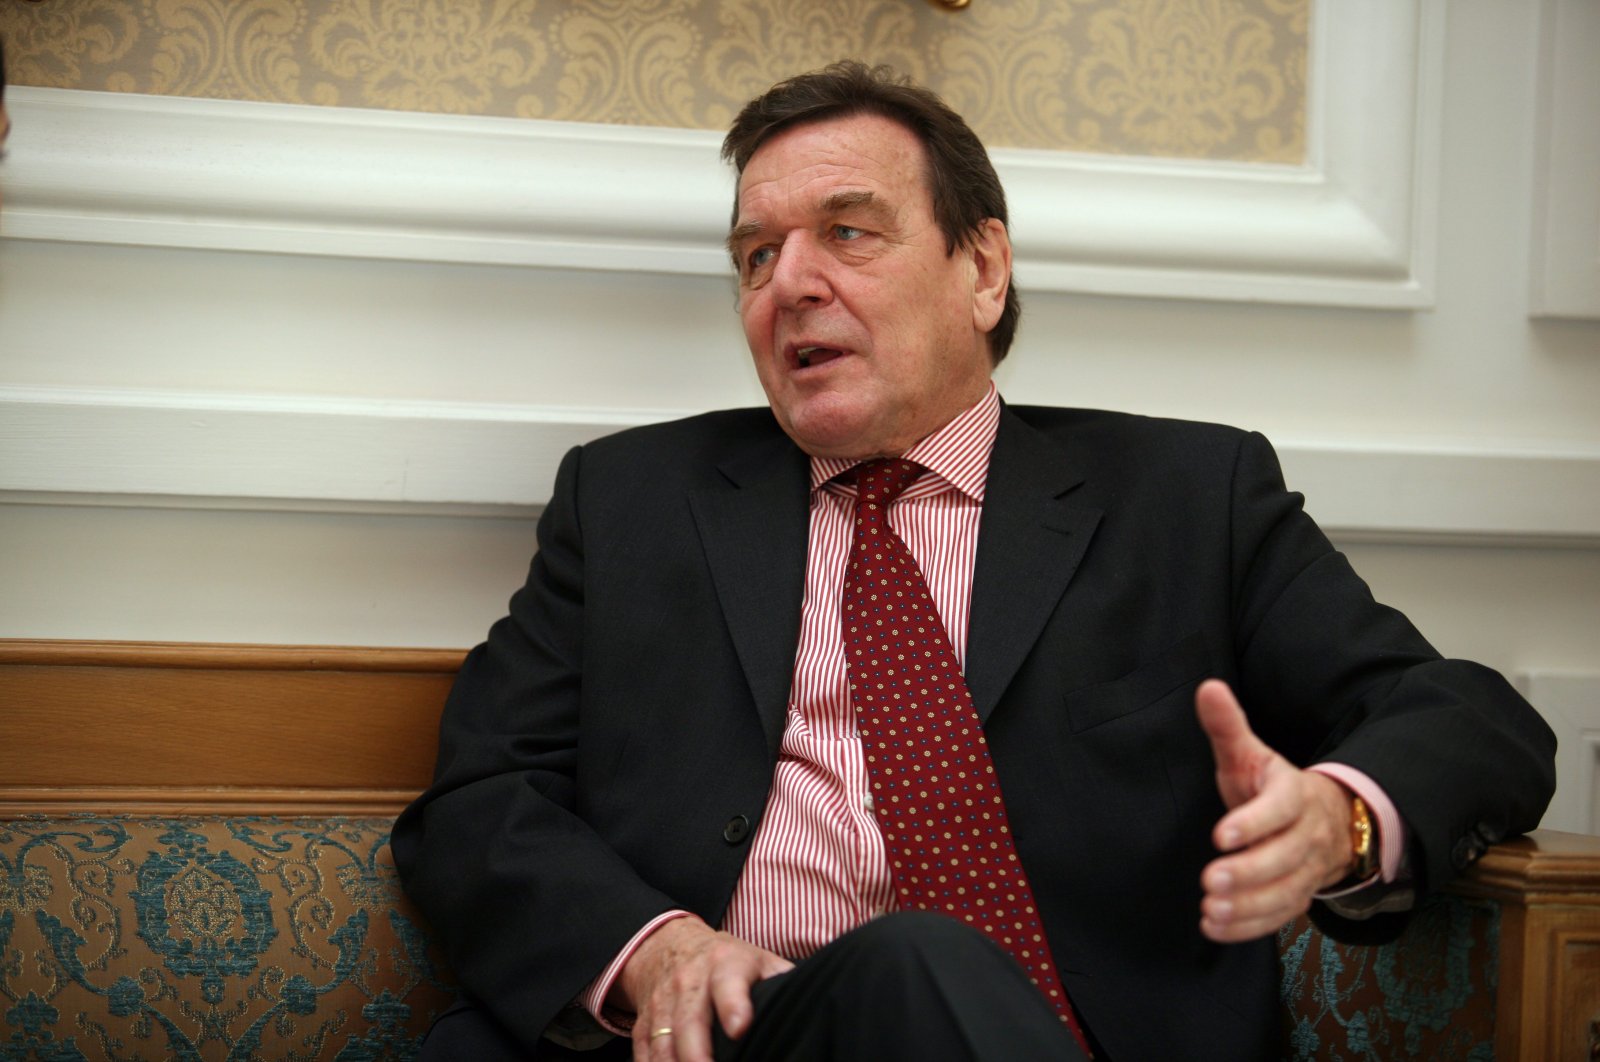 Former German Chancellor Gerhard Schröder. (Photo by Cenk Ertekin)

